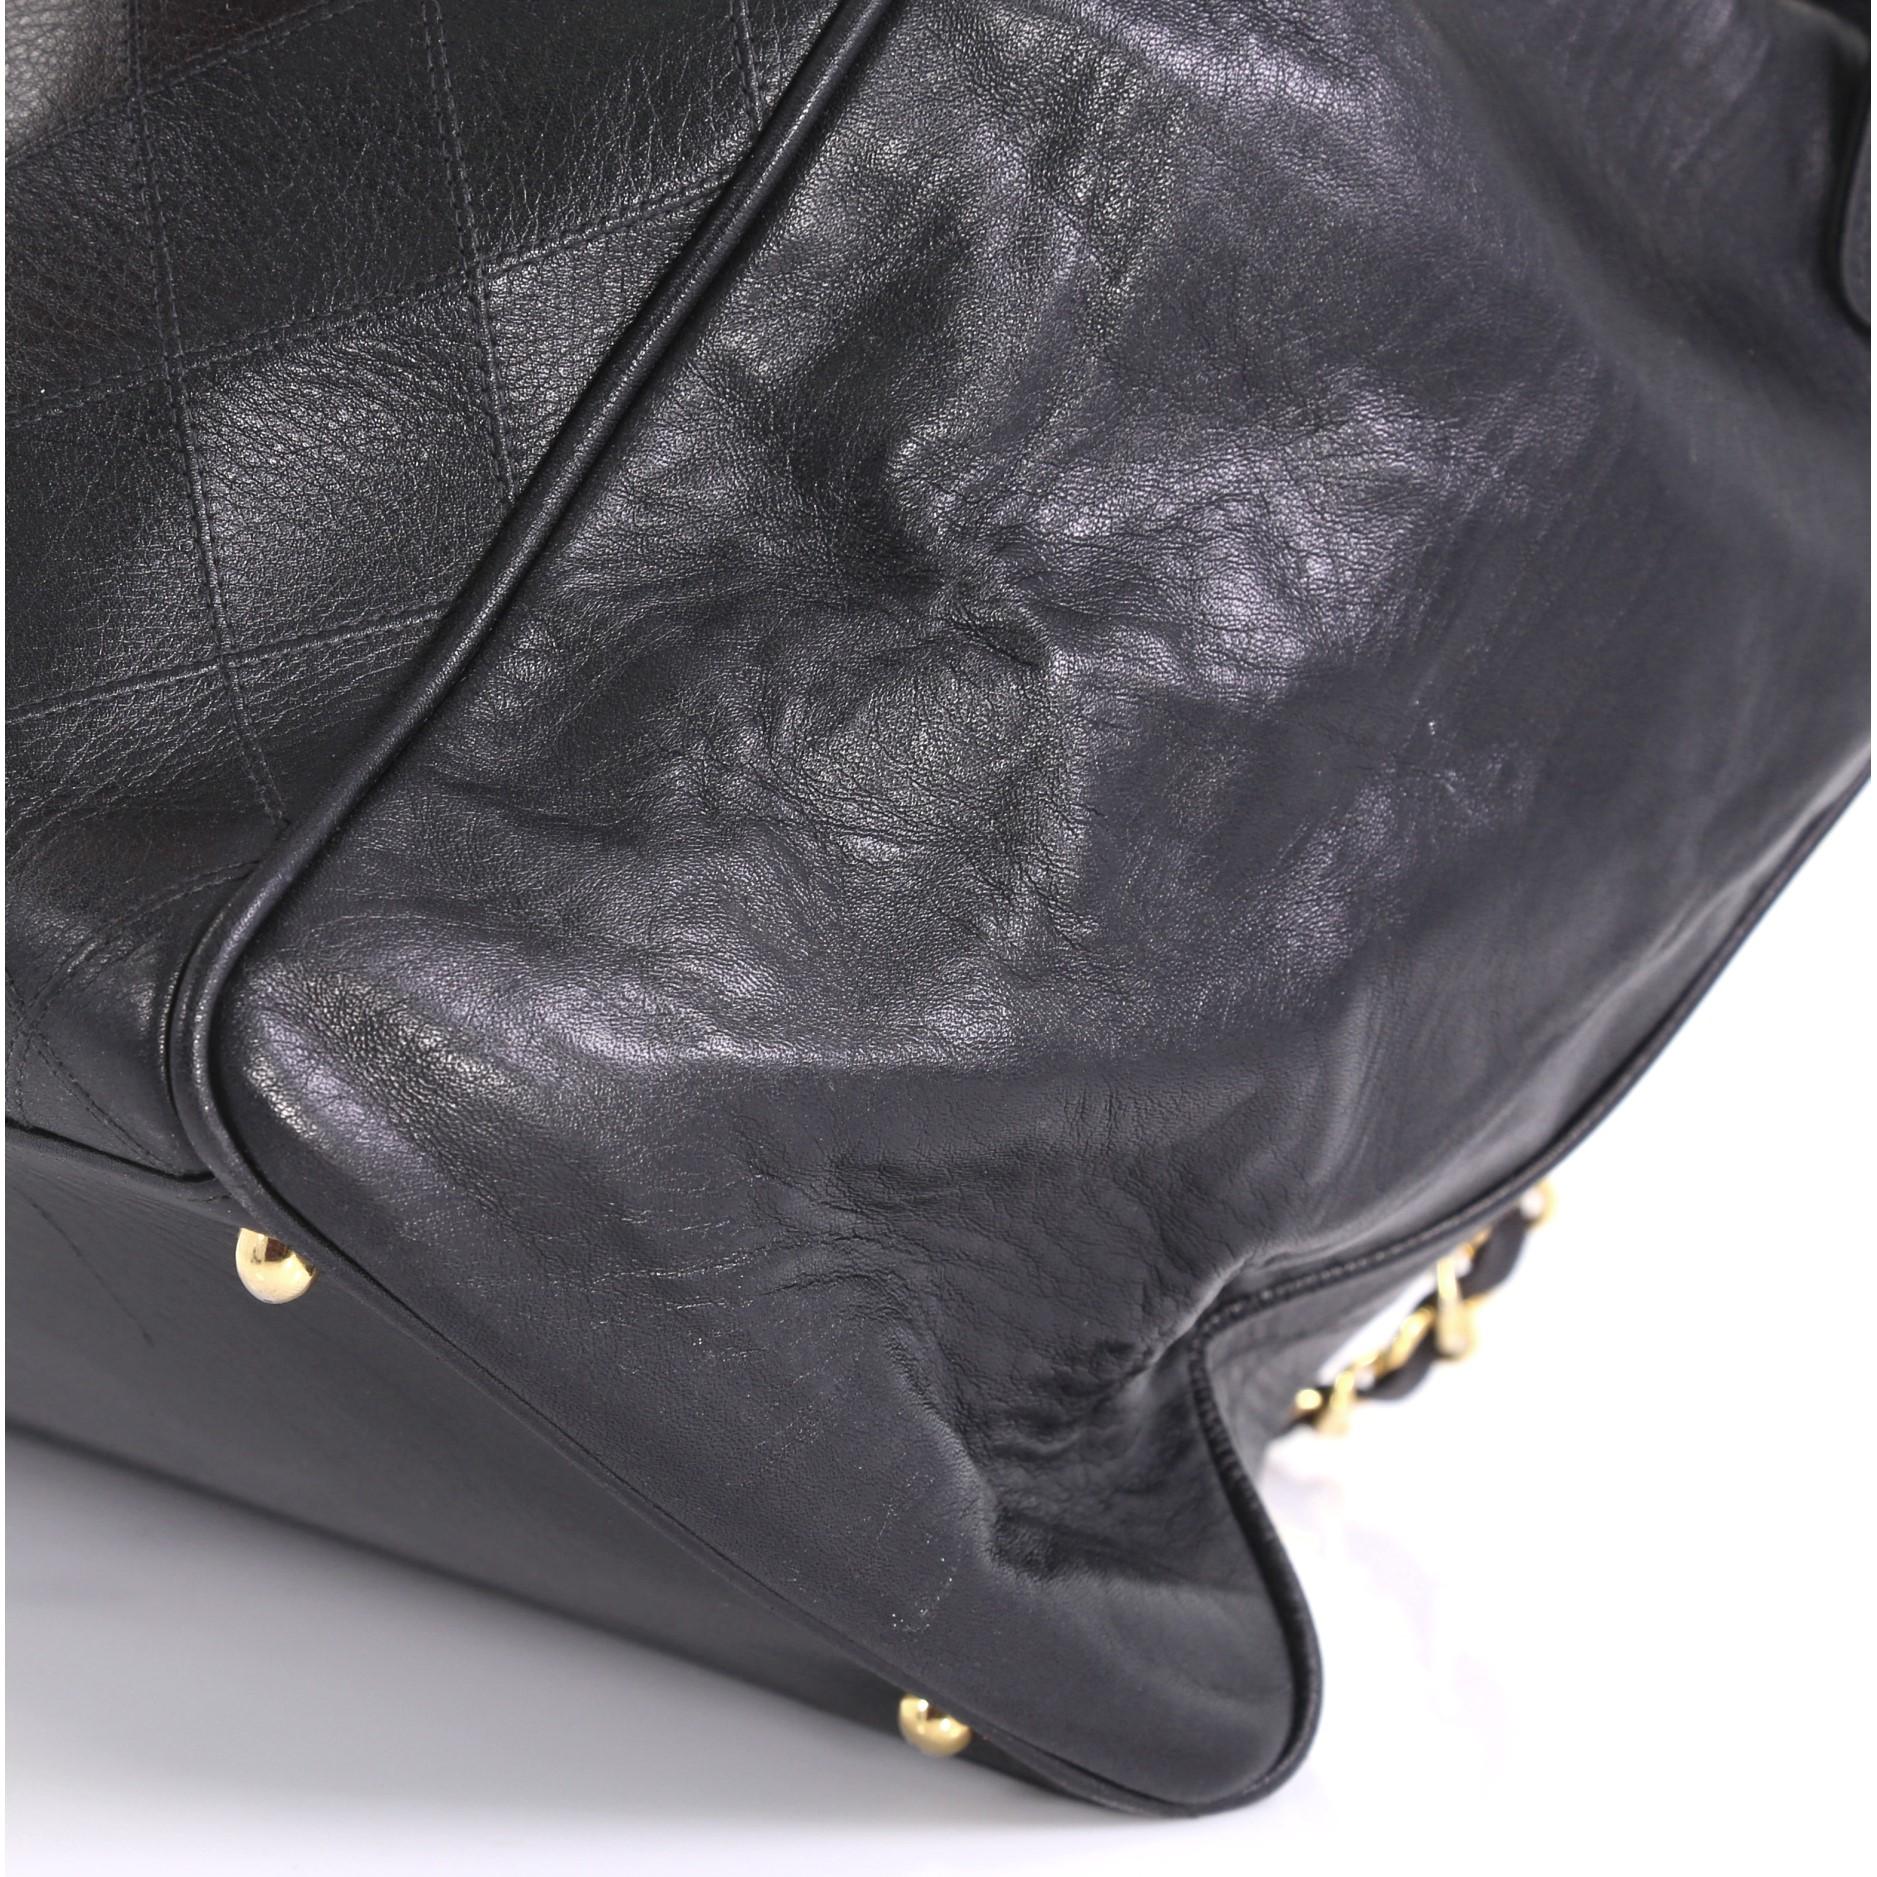  Chanel Vintage Supermodel Weekender Bag Quilted Leather Large 1